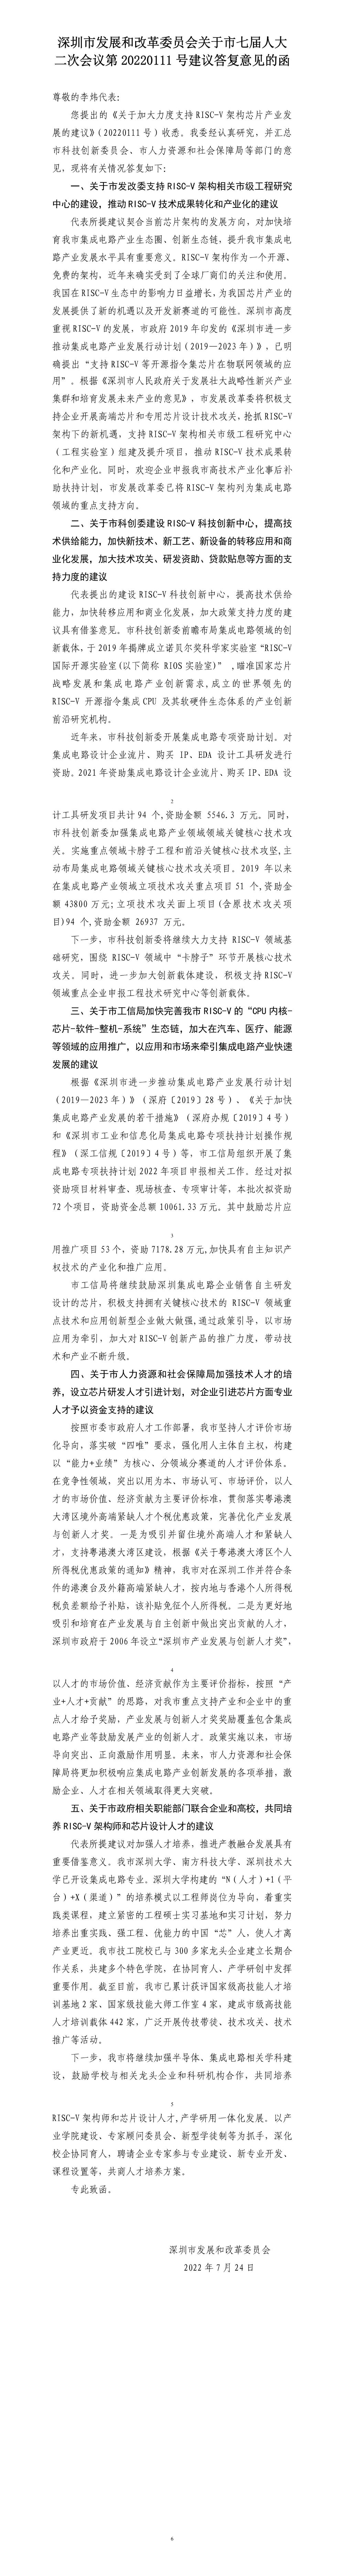 深圳市发展和改革委员会关于市七届人大二次会议第20220111号建议答复意见的函.jpg